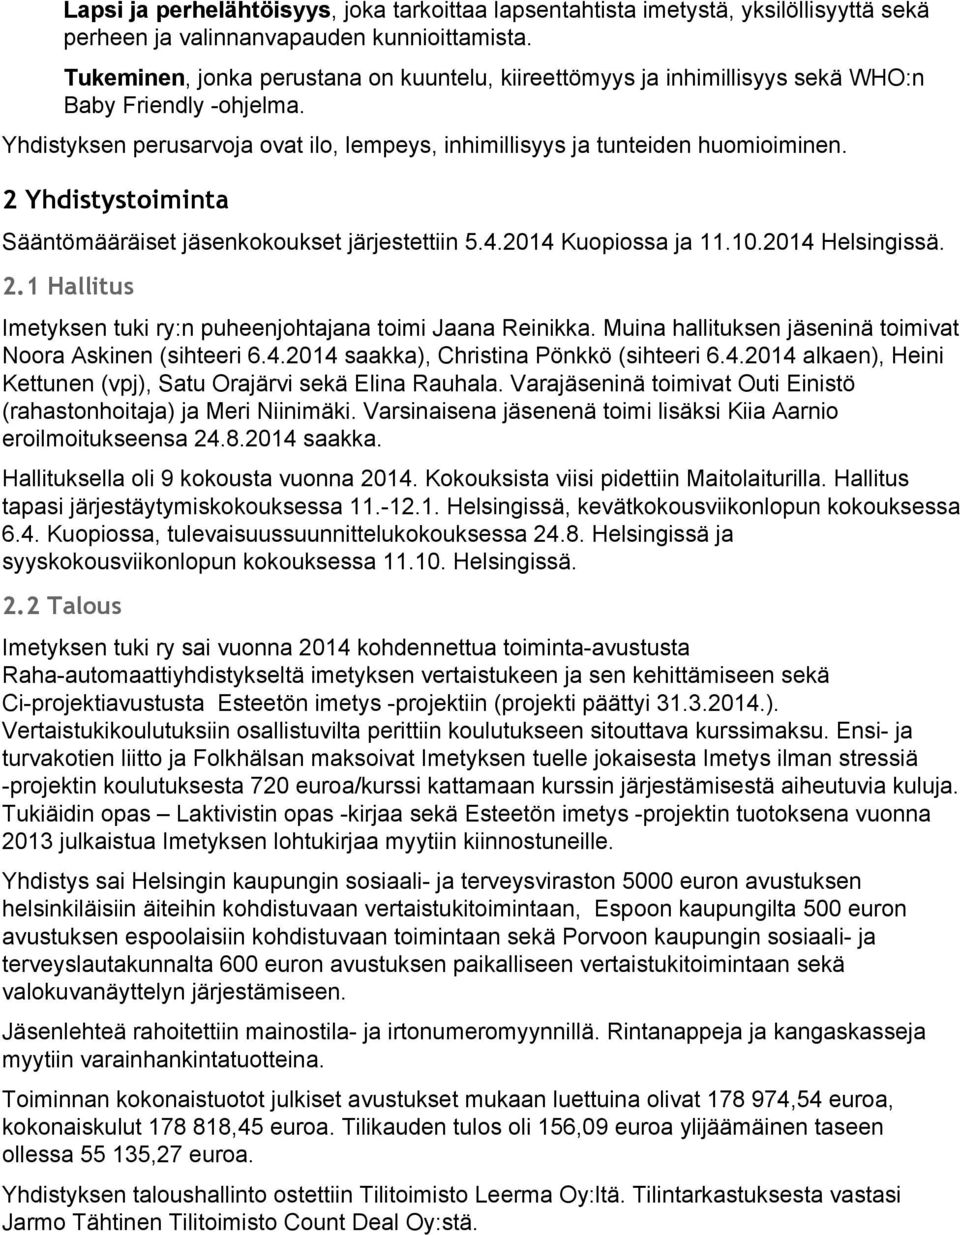 2 Yhdistystoiminta Sääntömääräiset jäsenkokoukset järjestettiin 5.4.2014 Kuopiossa ja 11.10.2014 Helsingissä. 2.1 Hallitus Imetyksen tuki ry:n puheenjohtajana toimi Jaana Reinikka.